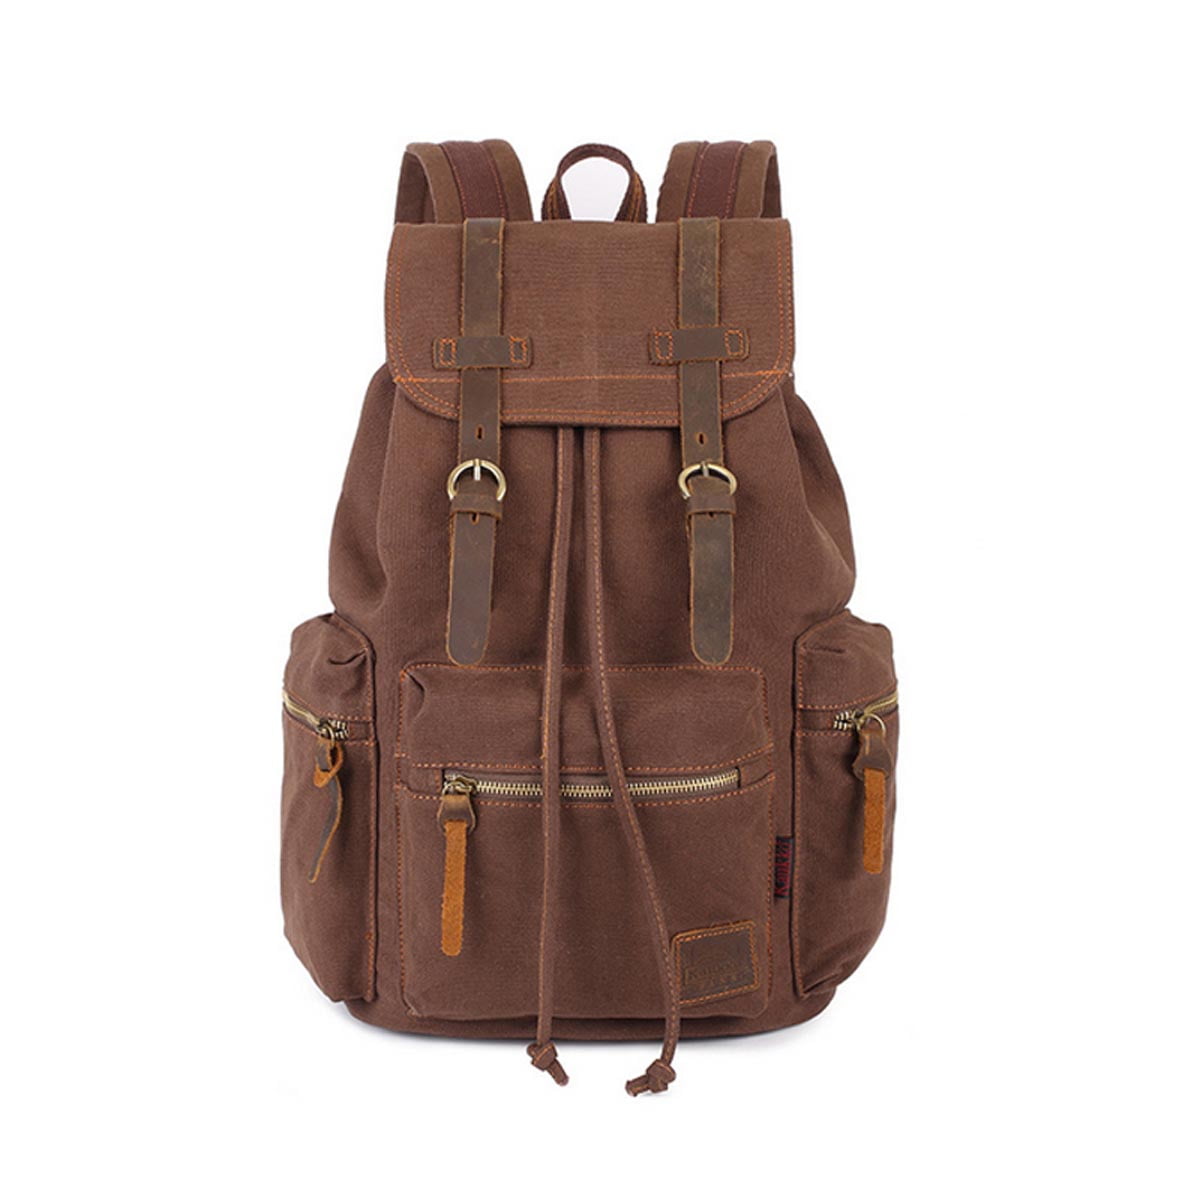 New Stylish Canvas Backpack Rucksack School bag Satchel Hiking Bag Vintage 